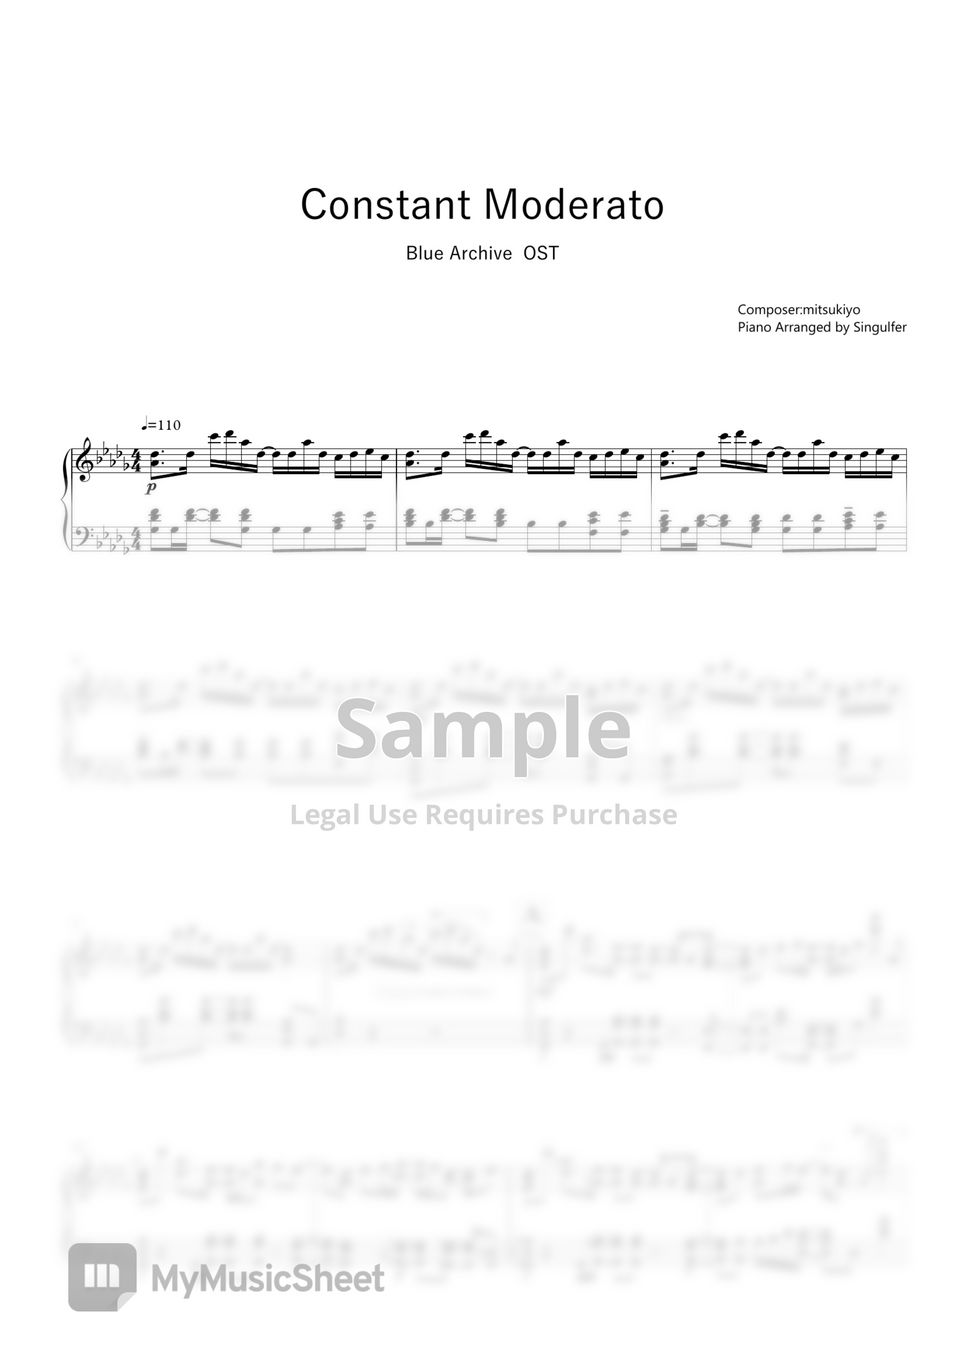 碧蓝档案 - Constant Moderato (钢琴版) by Singulfer-小言